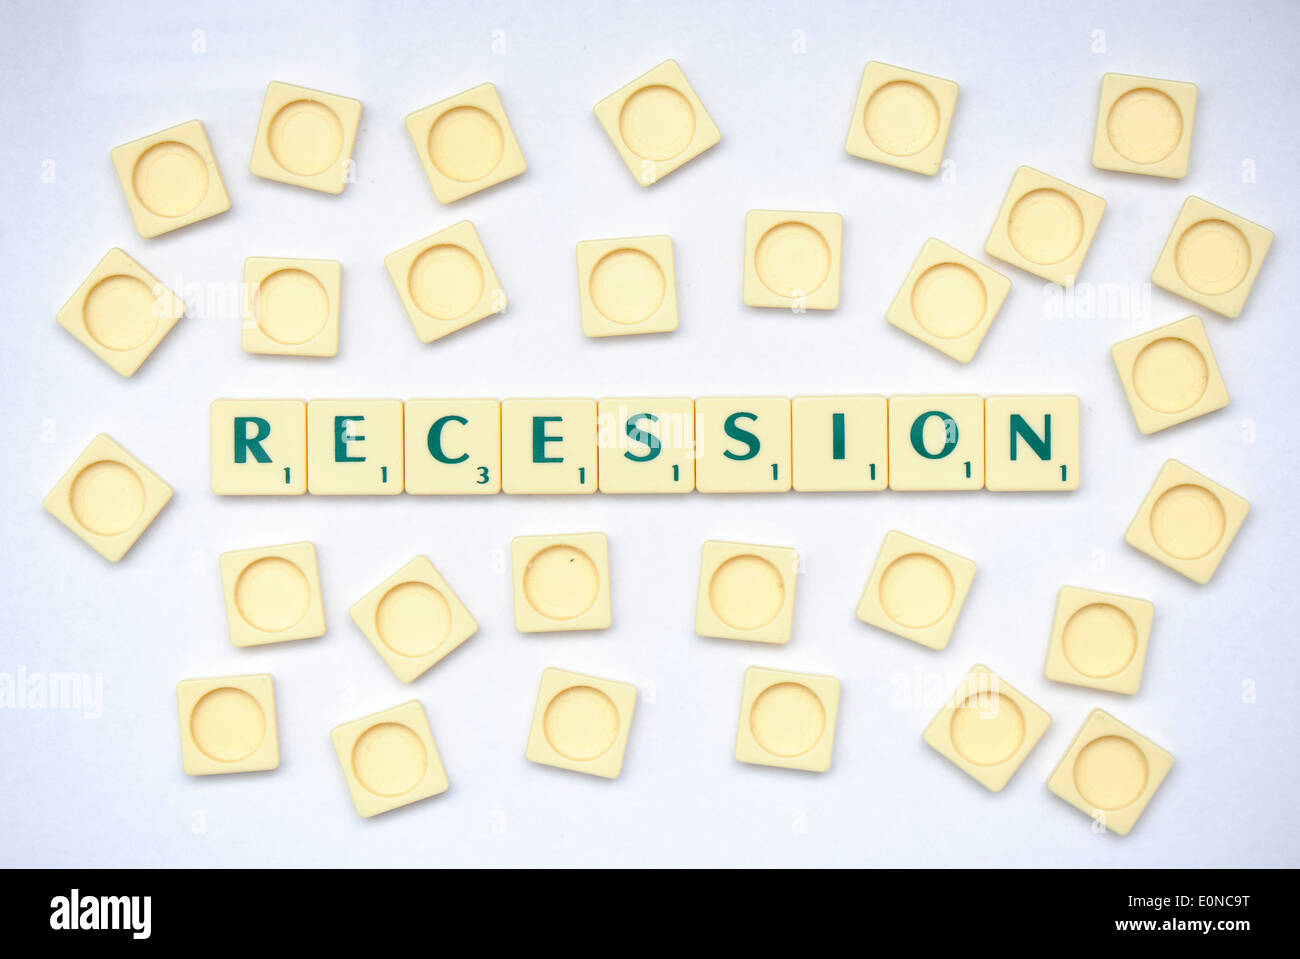 Piastrelle Scrabble la lettura delle parole di recessione Foto Stock